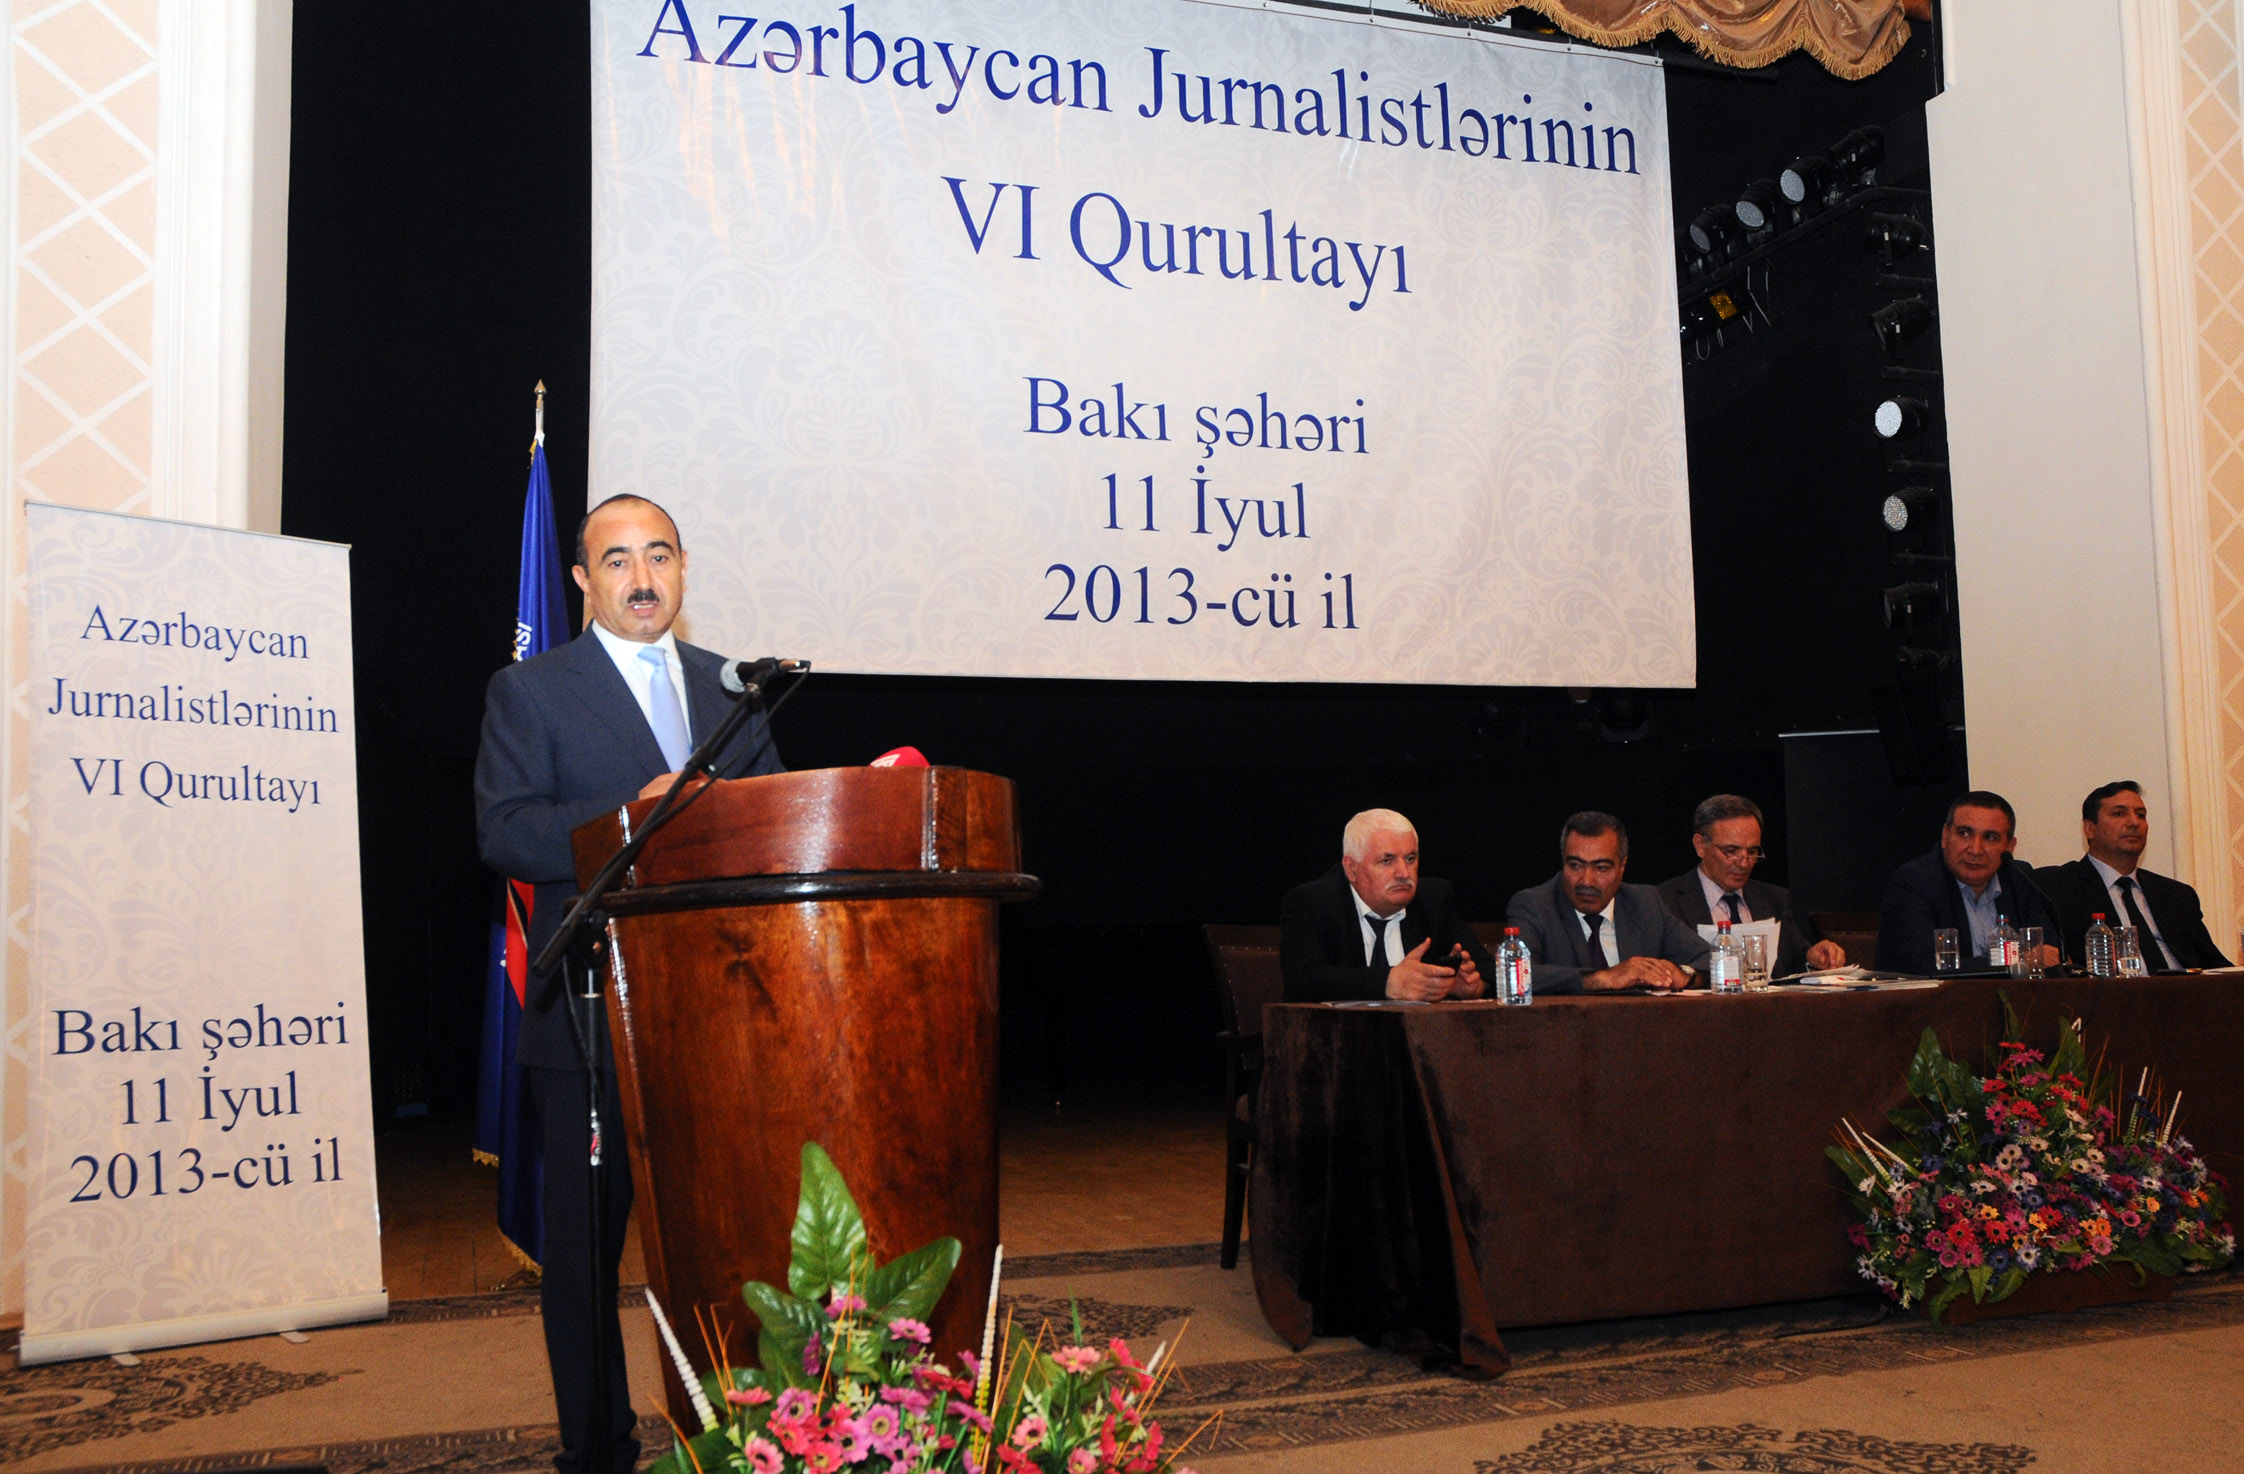 Media issues in spotlight at Baku congress